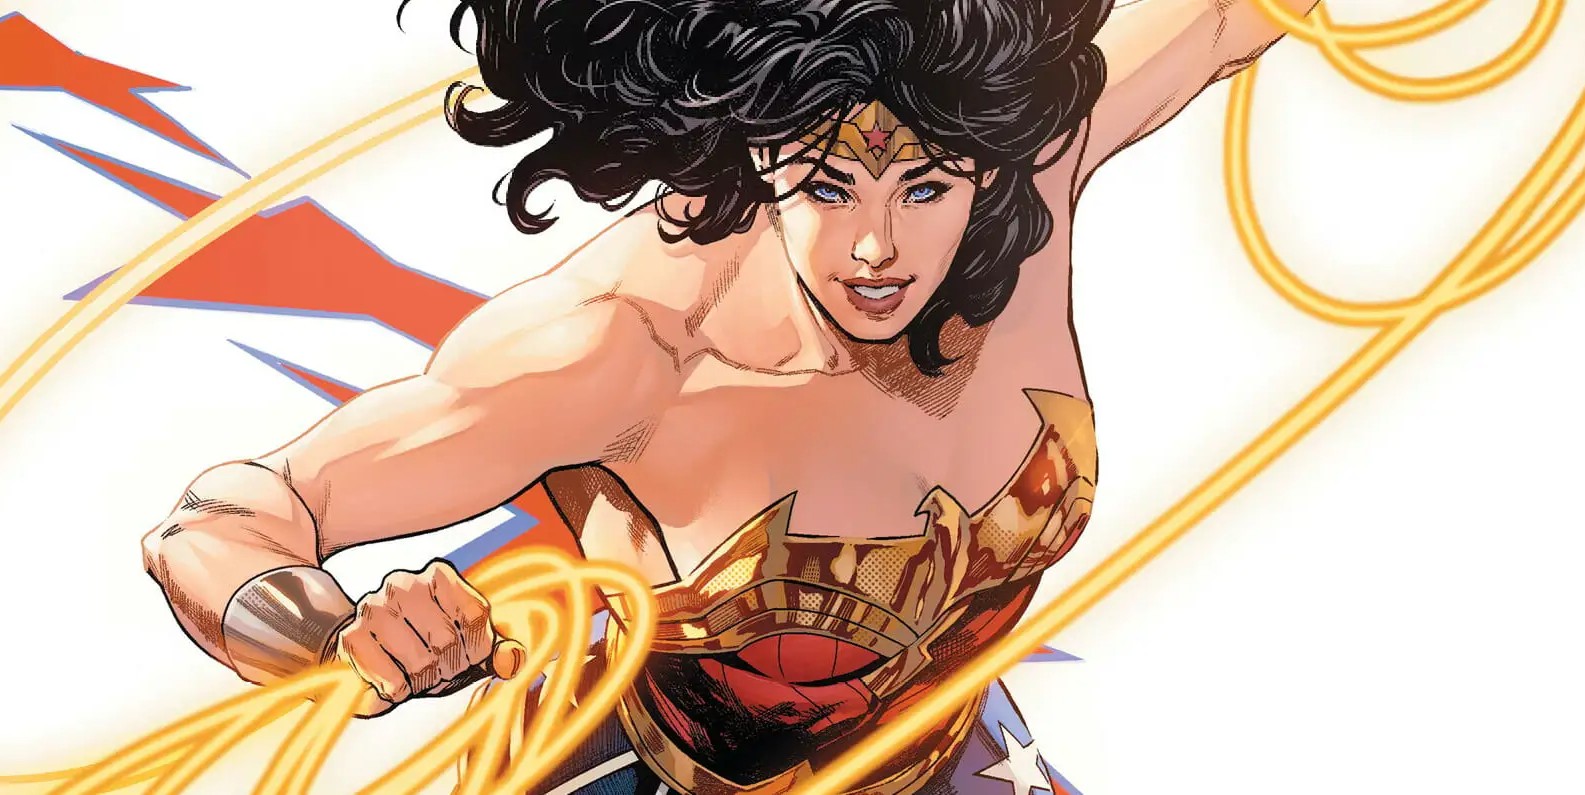 A Mulher Maravilha corre para lutar em uma história em quadrinhos da DC.